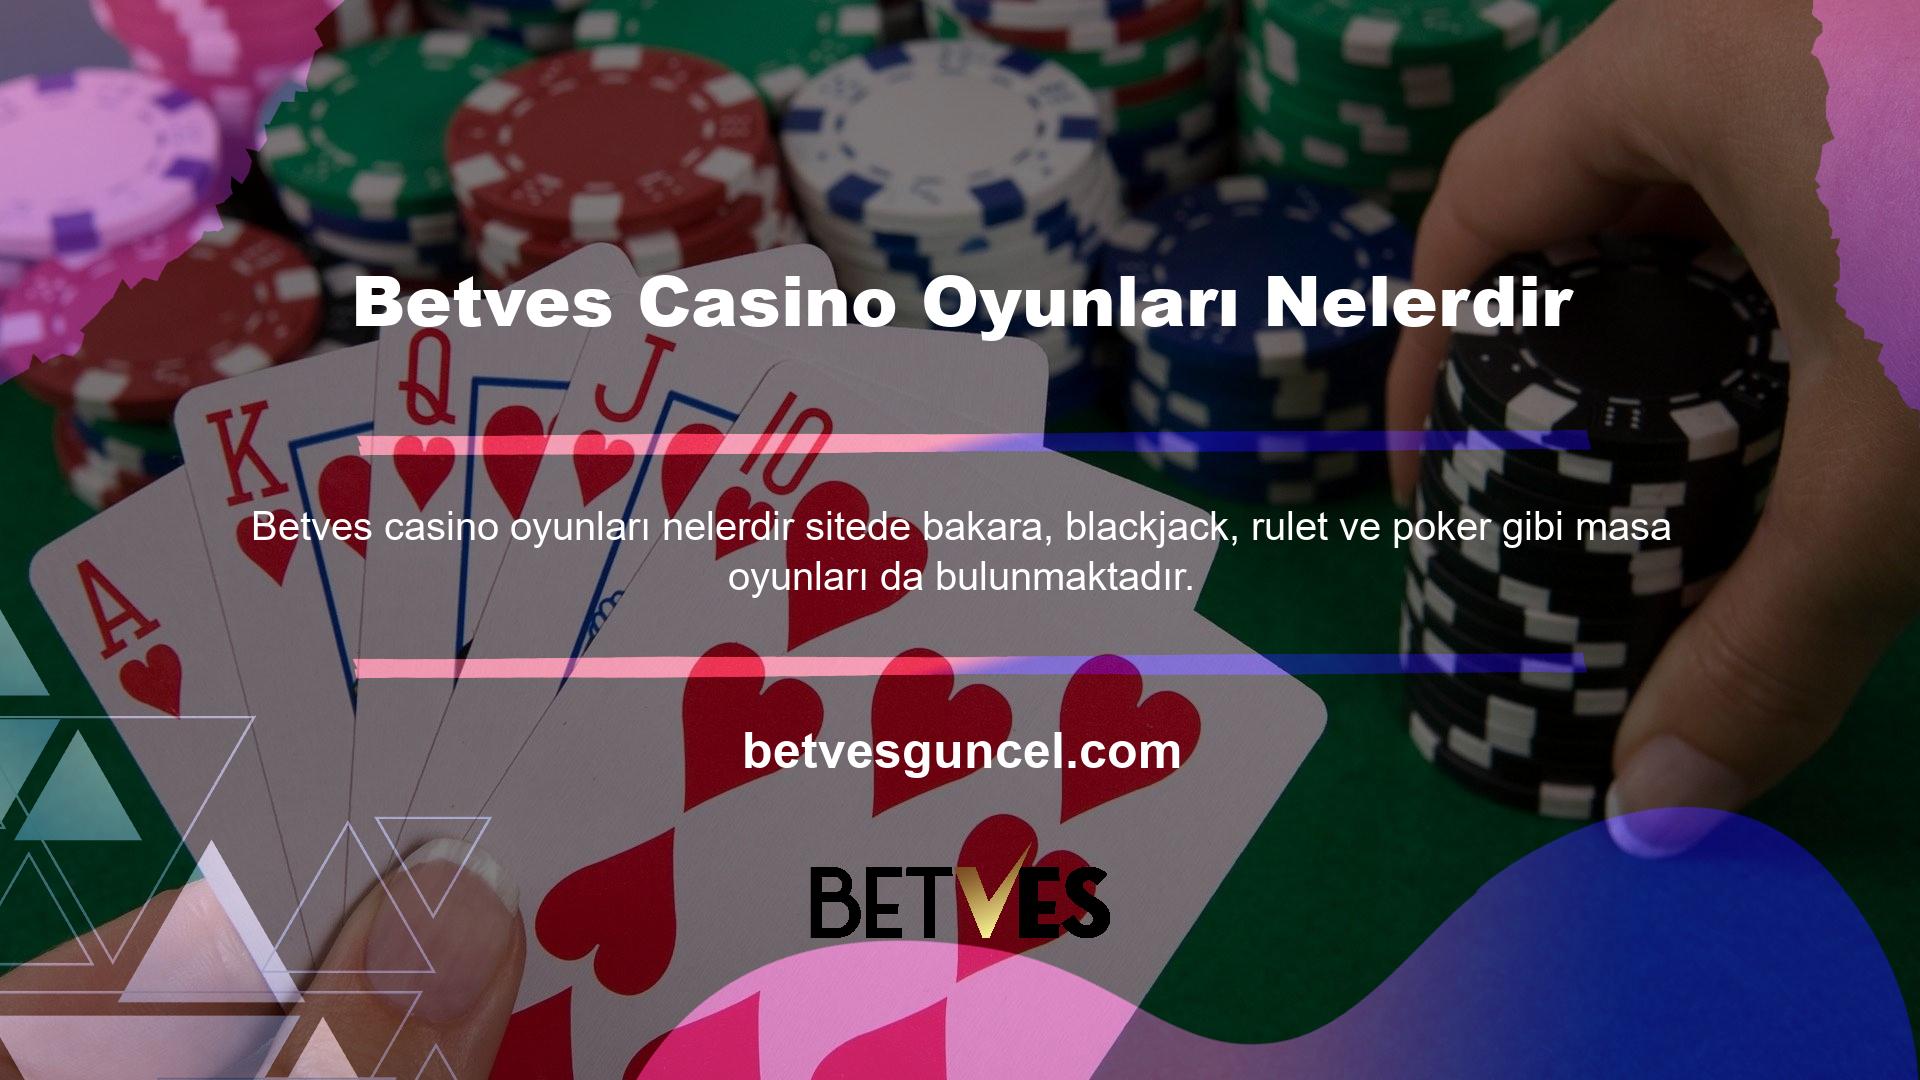 Canlı bir krupiye ile oynamayı tercih ederseniz, rulet, bakara ve blackjack gibi oyunlar oynamak için oyun portalımızın Canlı Casino bölümünü ziyaret edin